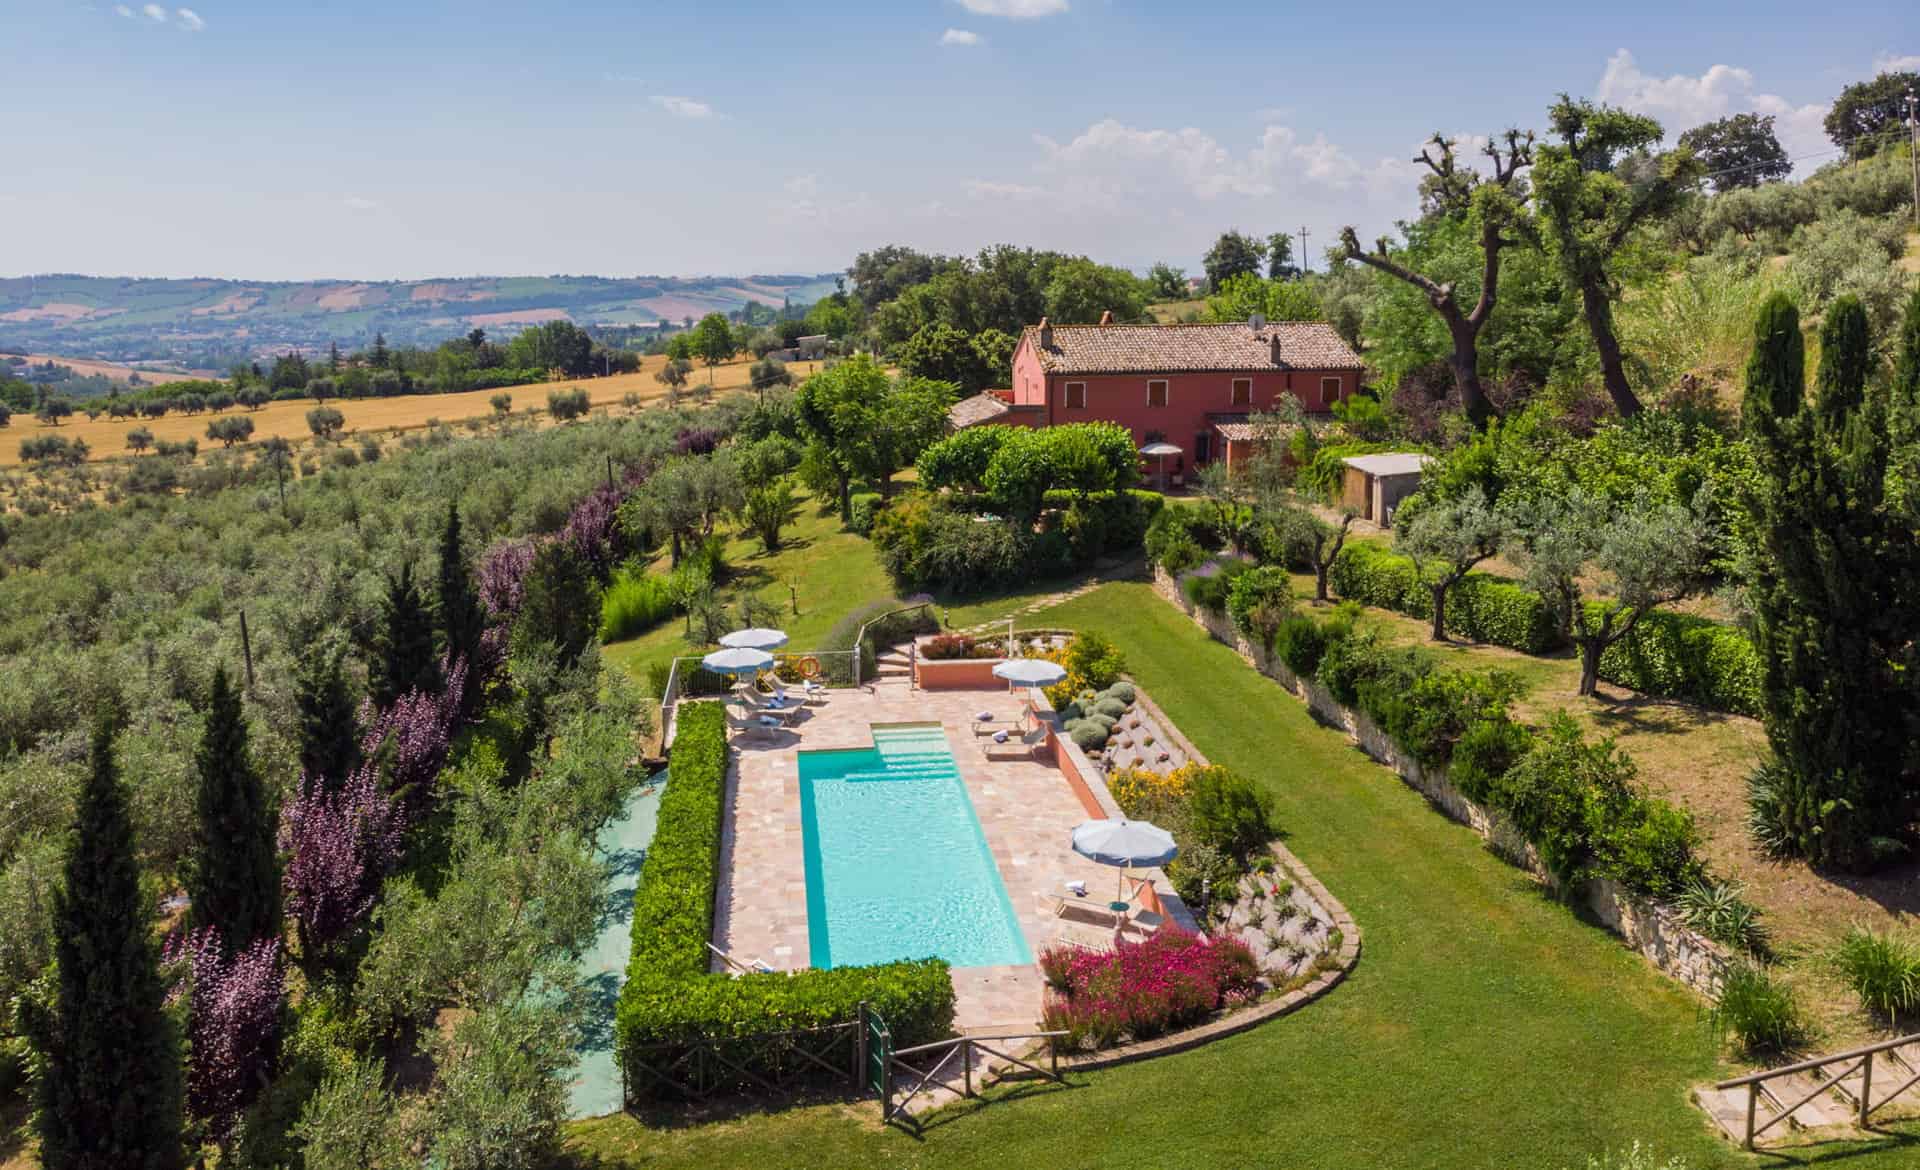 Ferienhaus in Italien in Alleinlage mit Pool